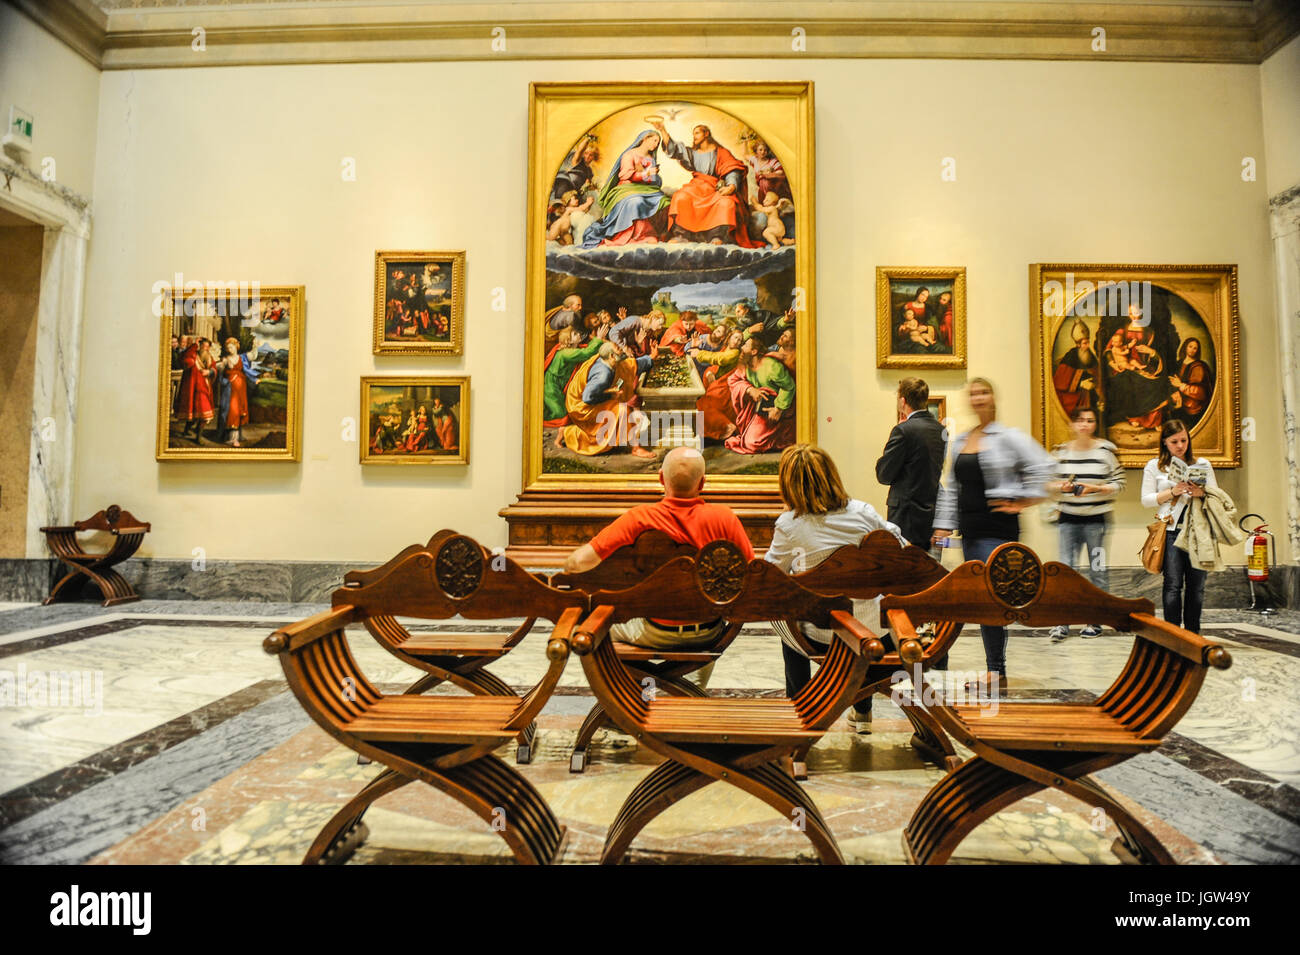 Les touristes détendue admirant le couronnement de la Vierge dans la Pinacothèque des Musées du Vatican. Musées du Vatican, Rome, Italie Banque D'Images